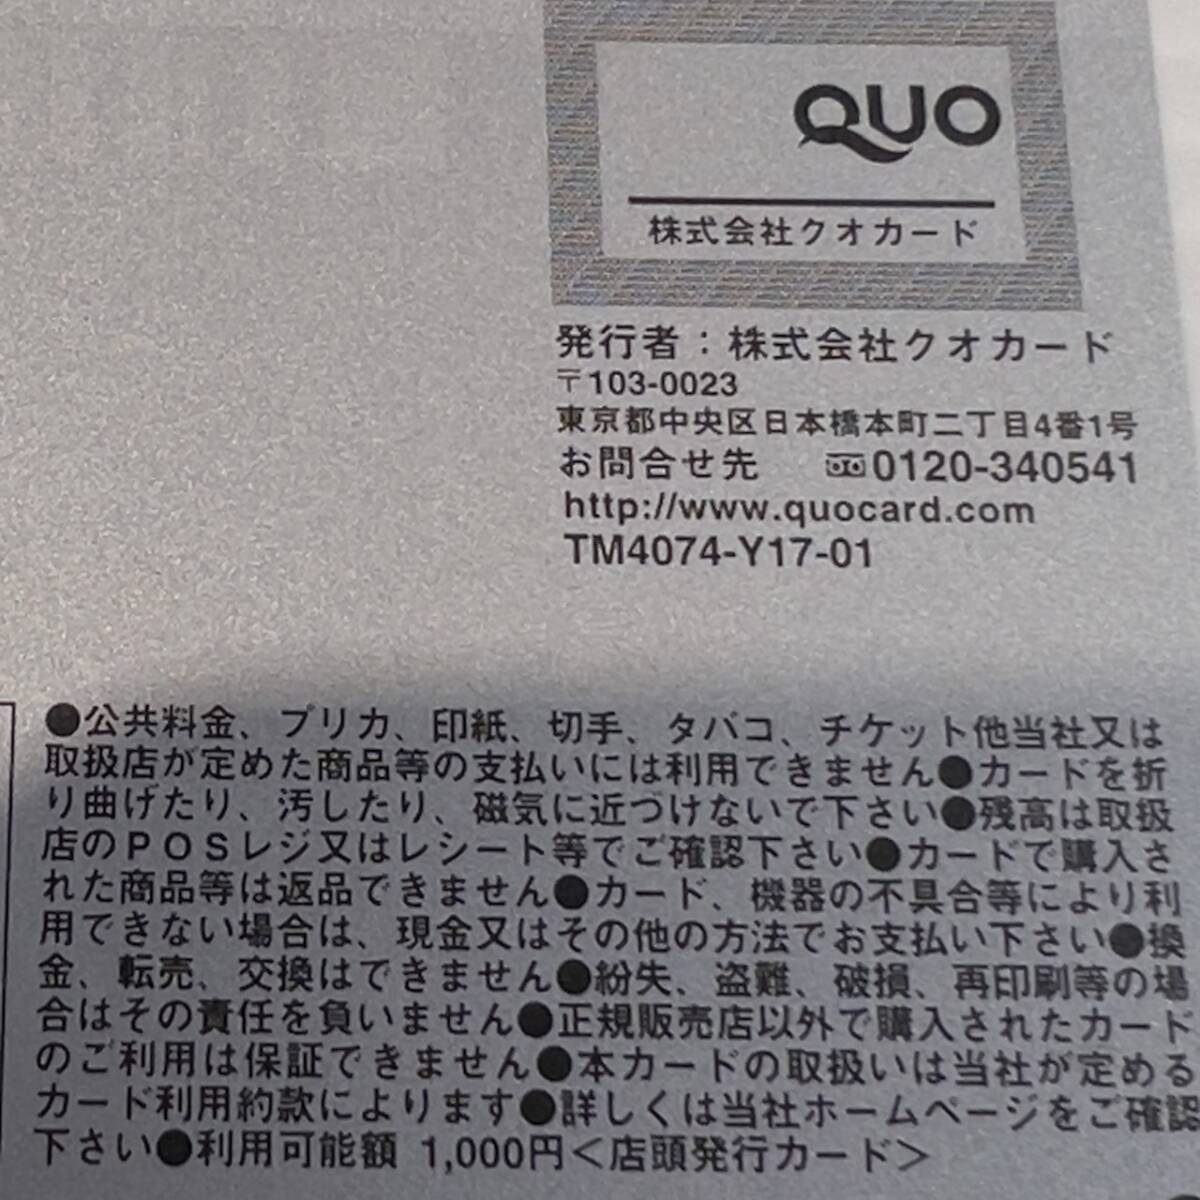  QUO card 1000 иен минут 2 листов витрина выпуск не использовался товар 